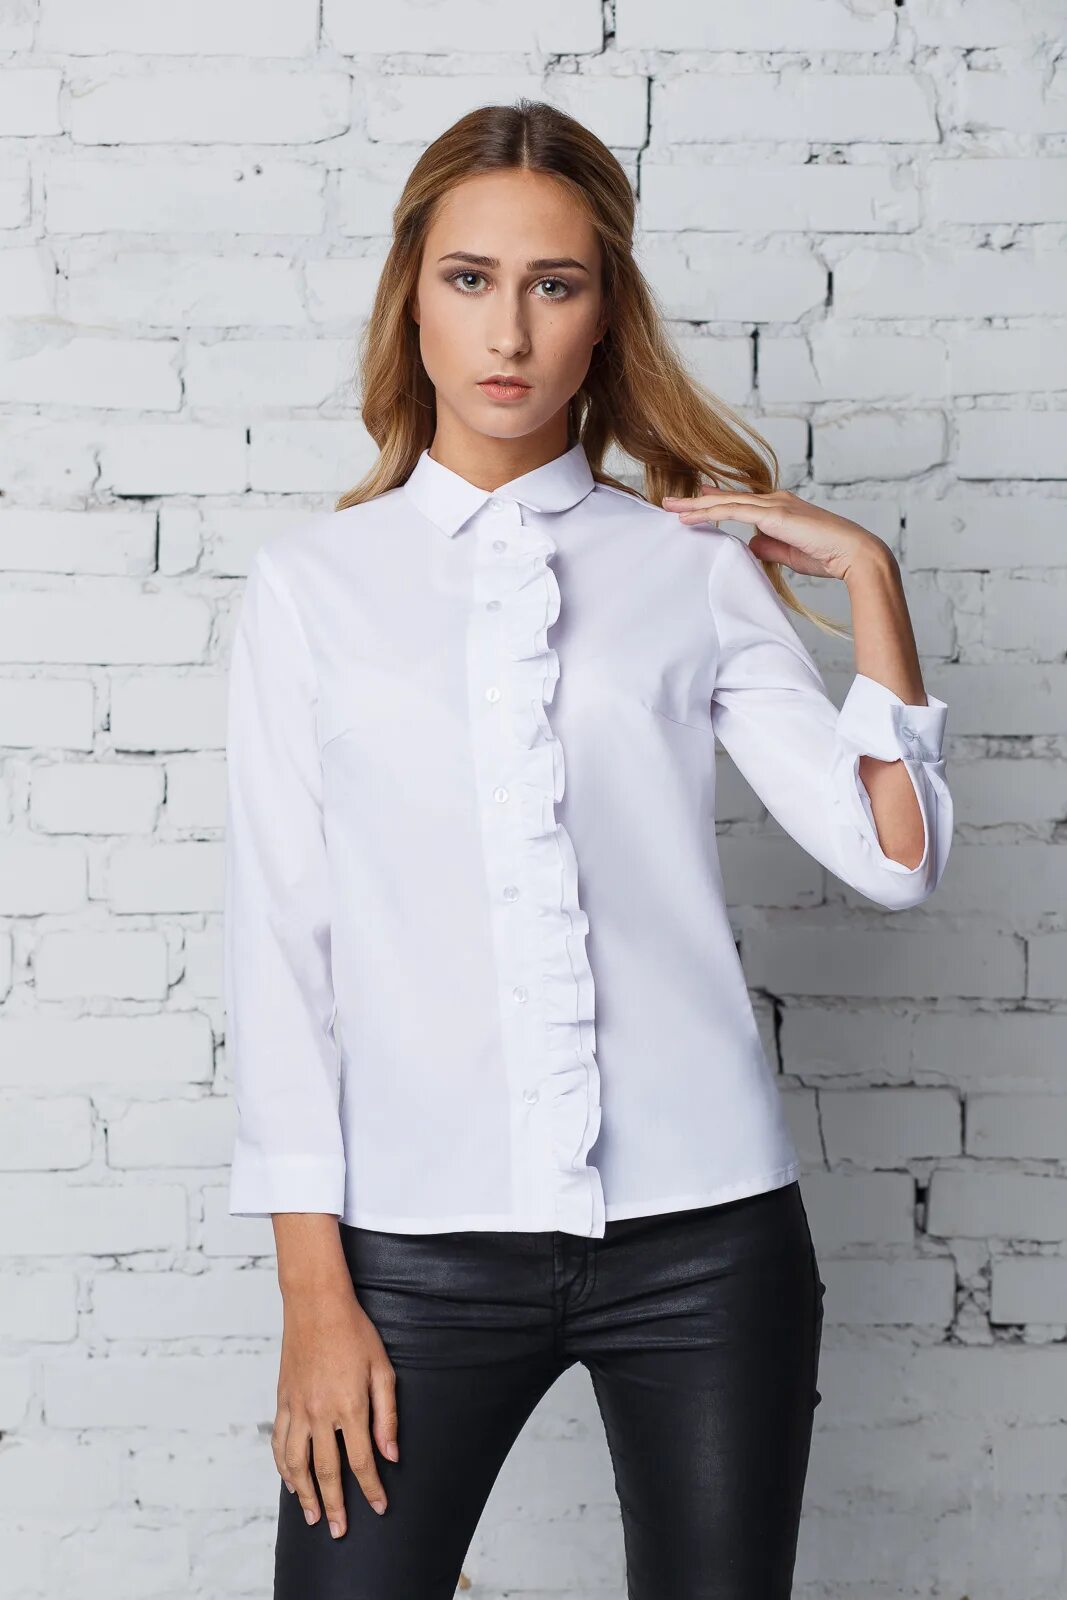 Белая блузка. Белая рубашка женская. Белая блузка женская. Интересные рубашки женские. Заказать блузку